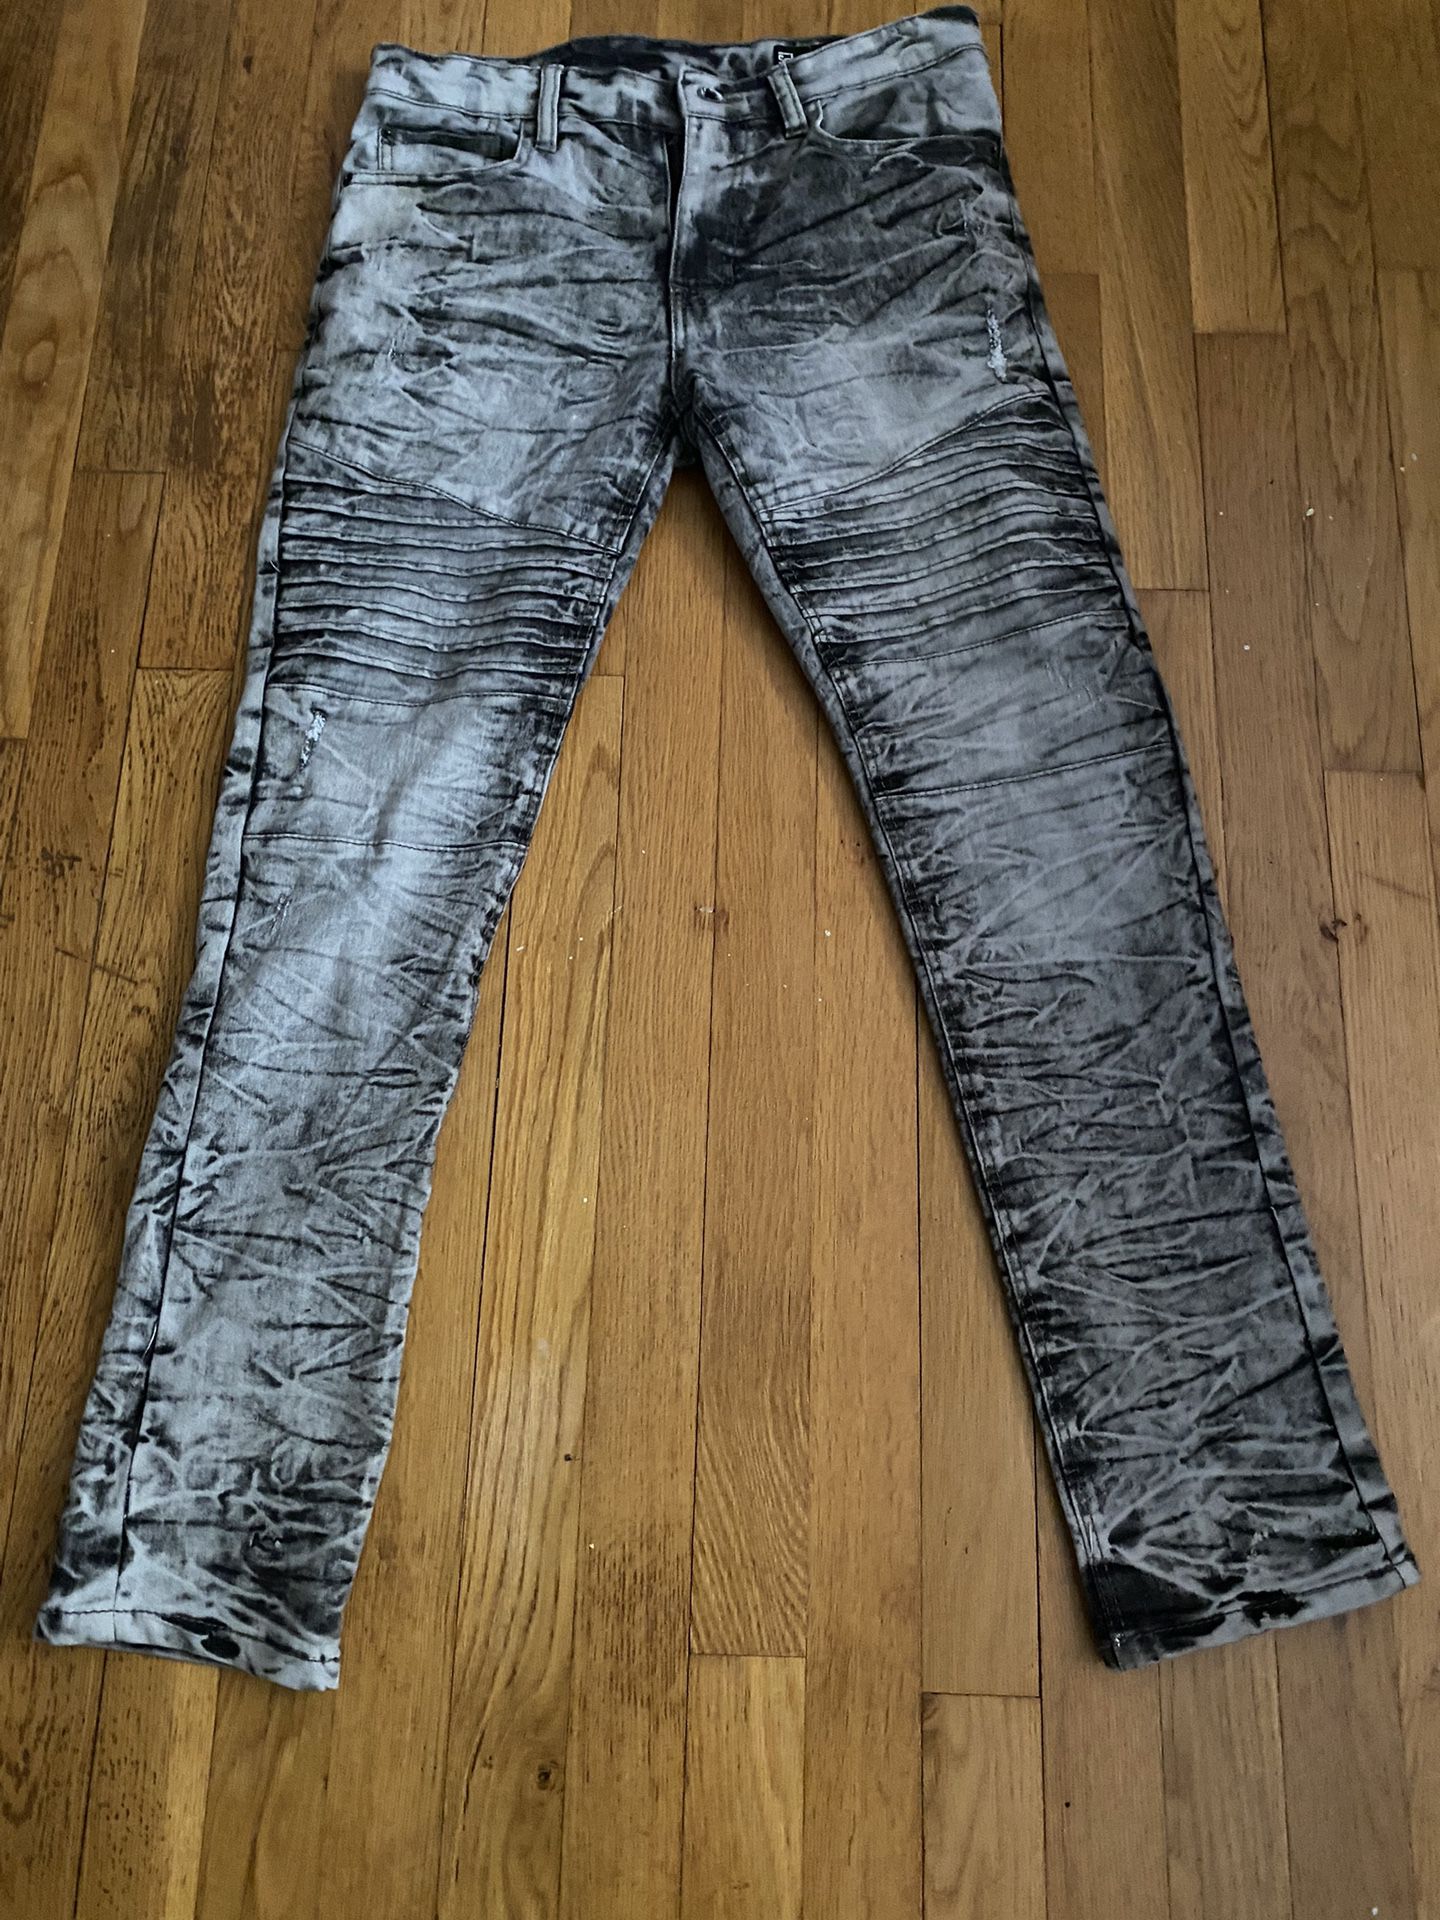 Grey Skinny Jeans 30x30 